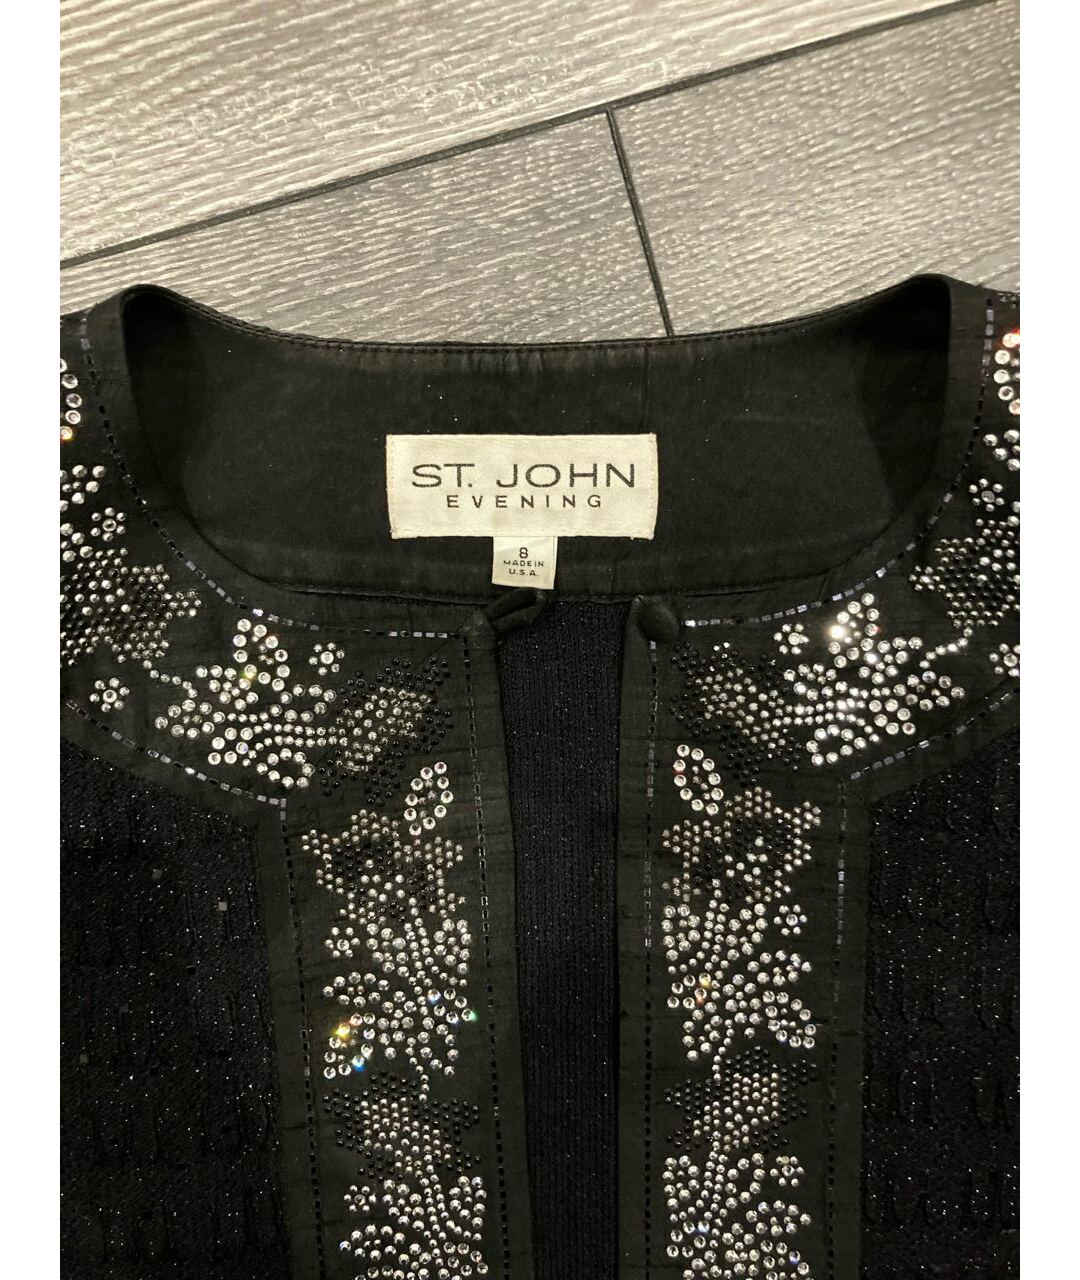 ST. JOHN Черный хлопковый жакет/пиджак, фото 2